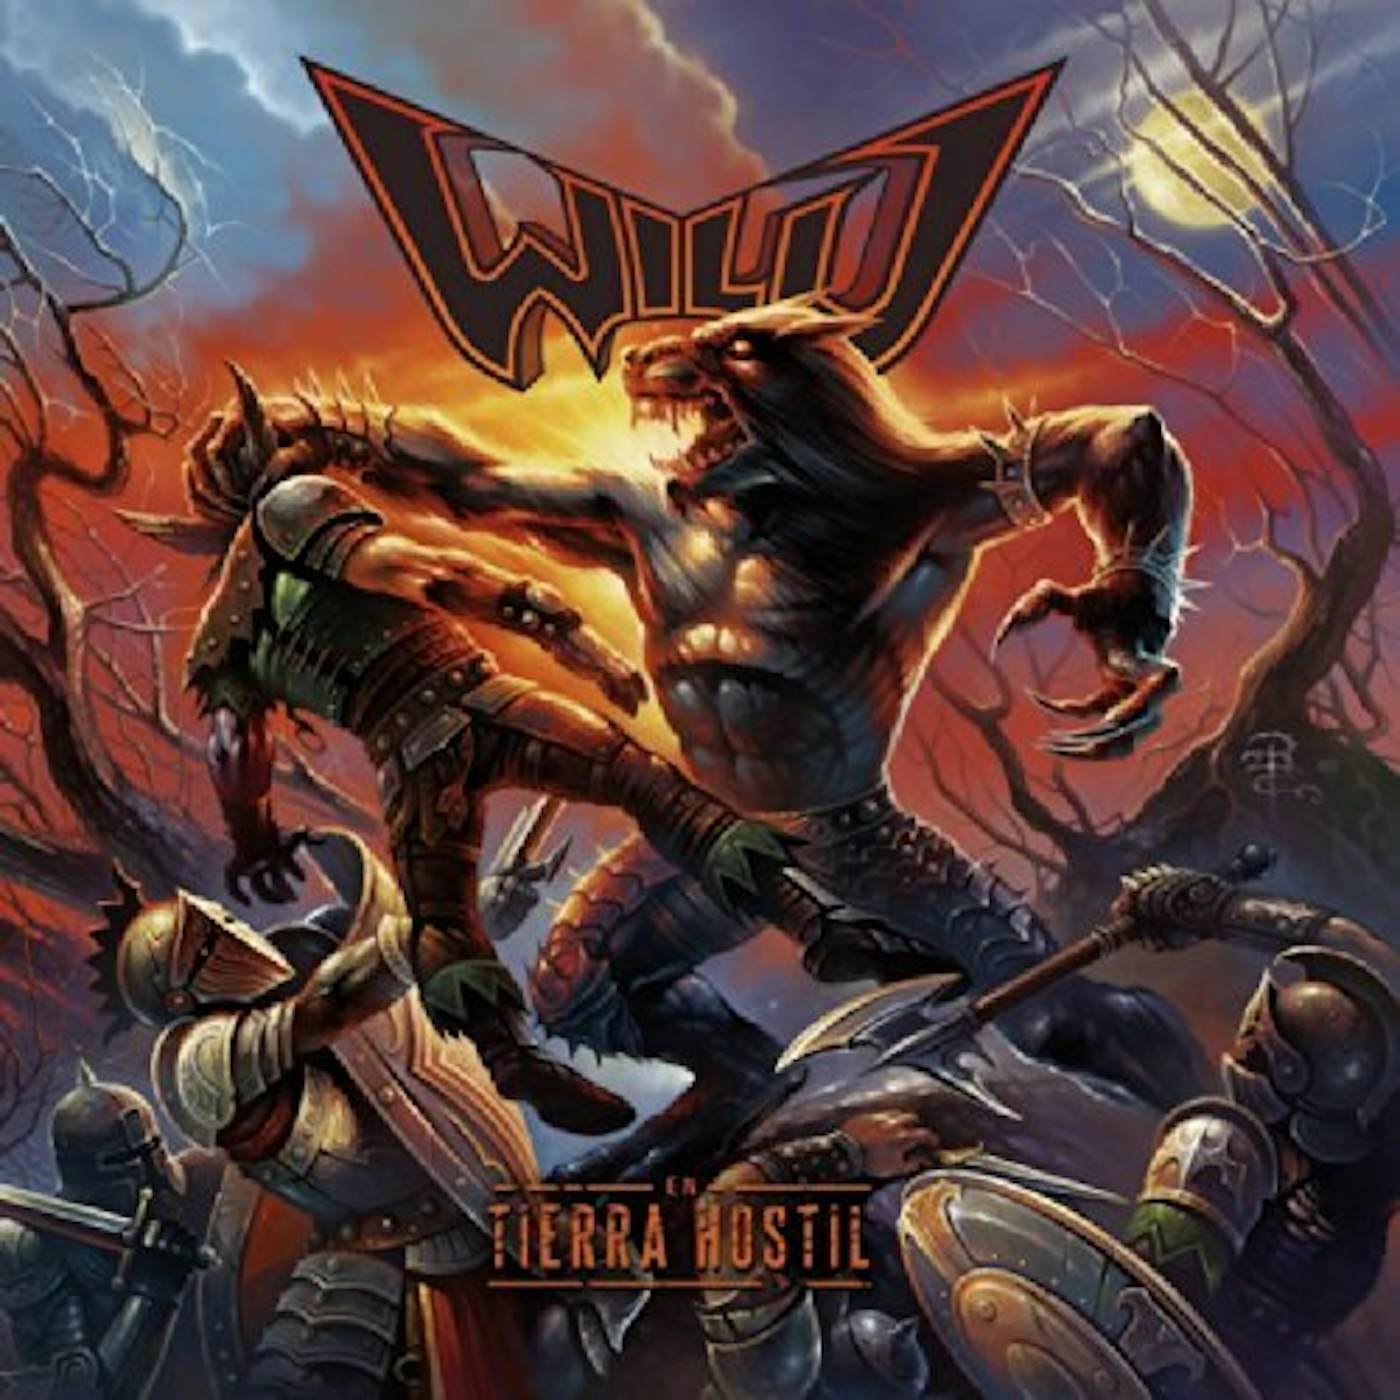 The Wild EN TIERRA HOSTIL CD